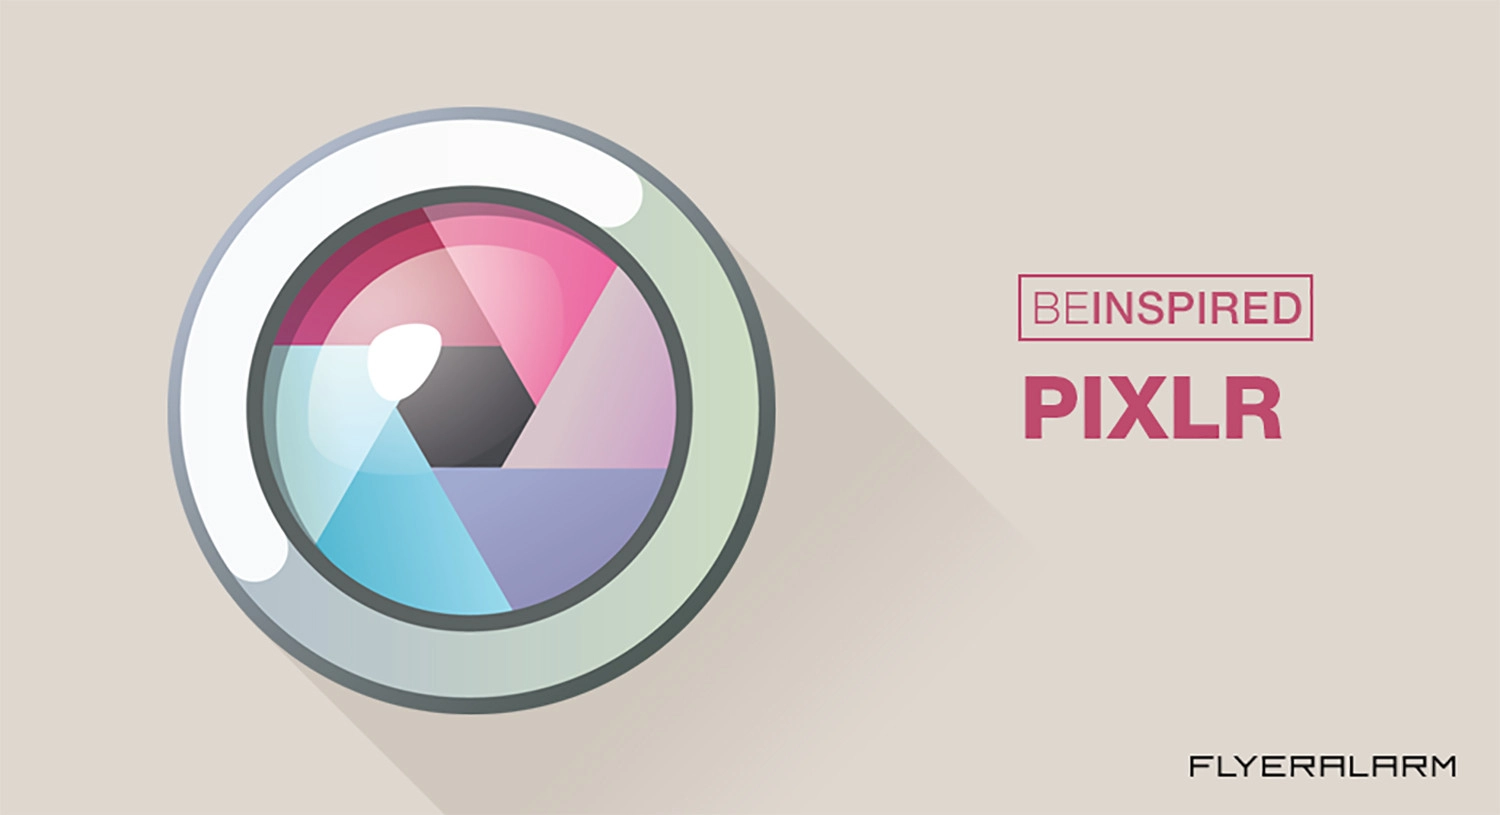 Pixlr mang đến năng lực sửa đổi thường xuyên nghiệp